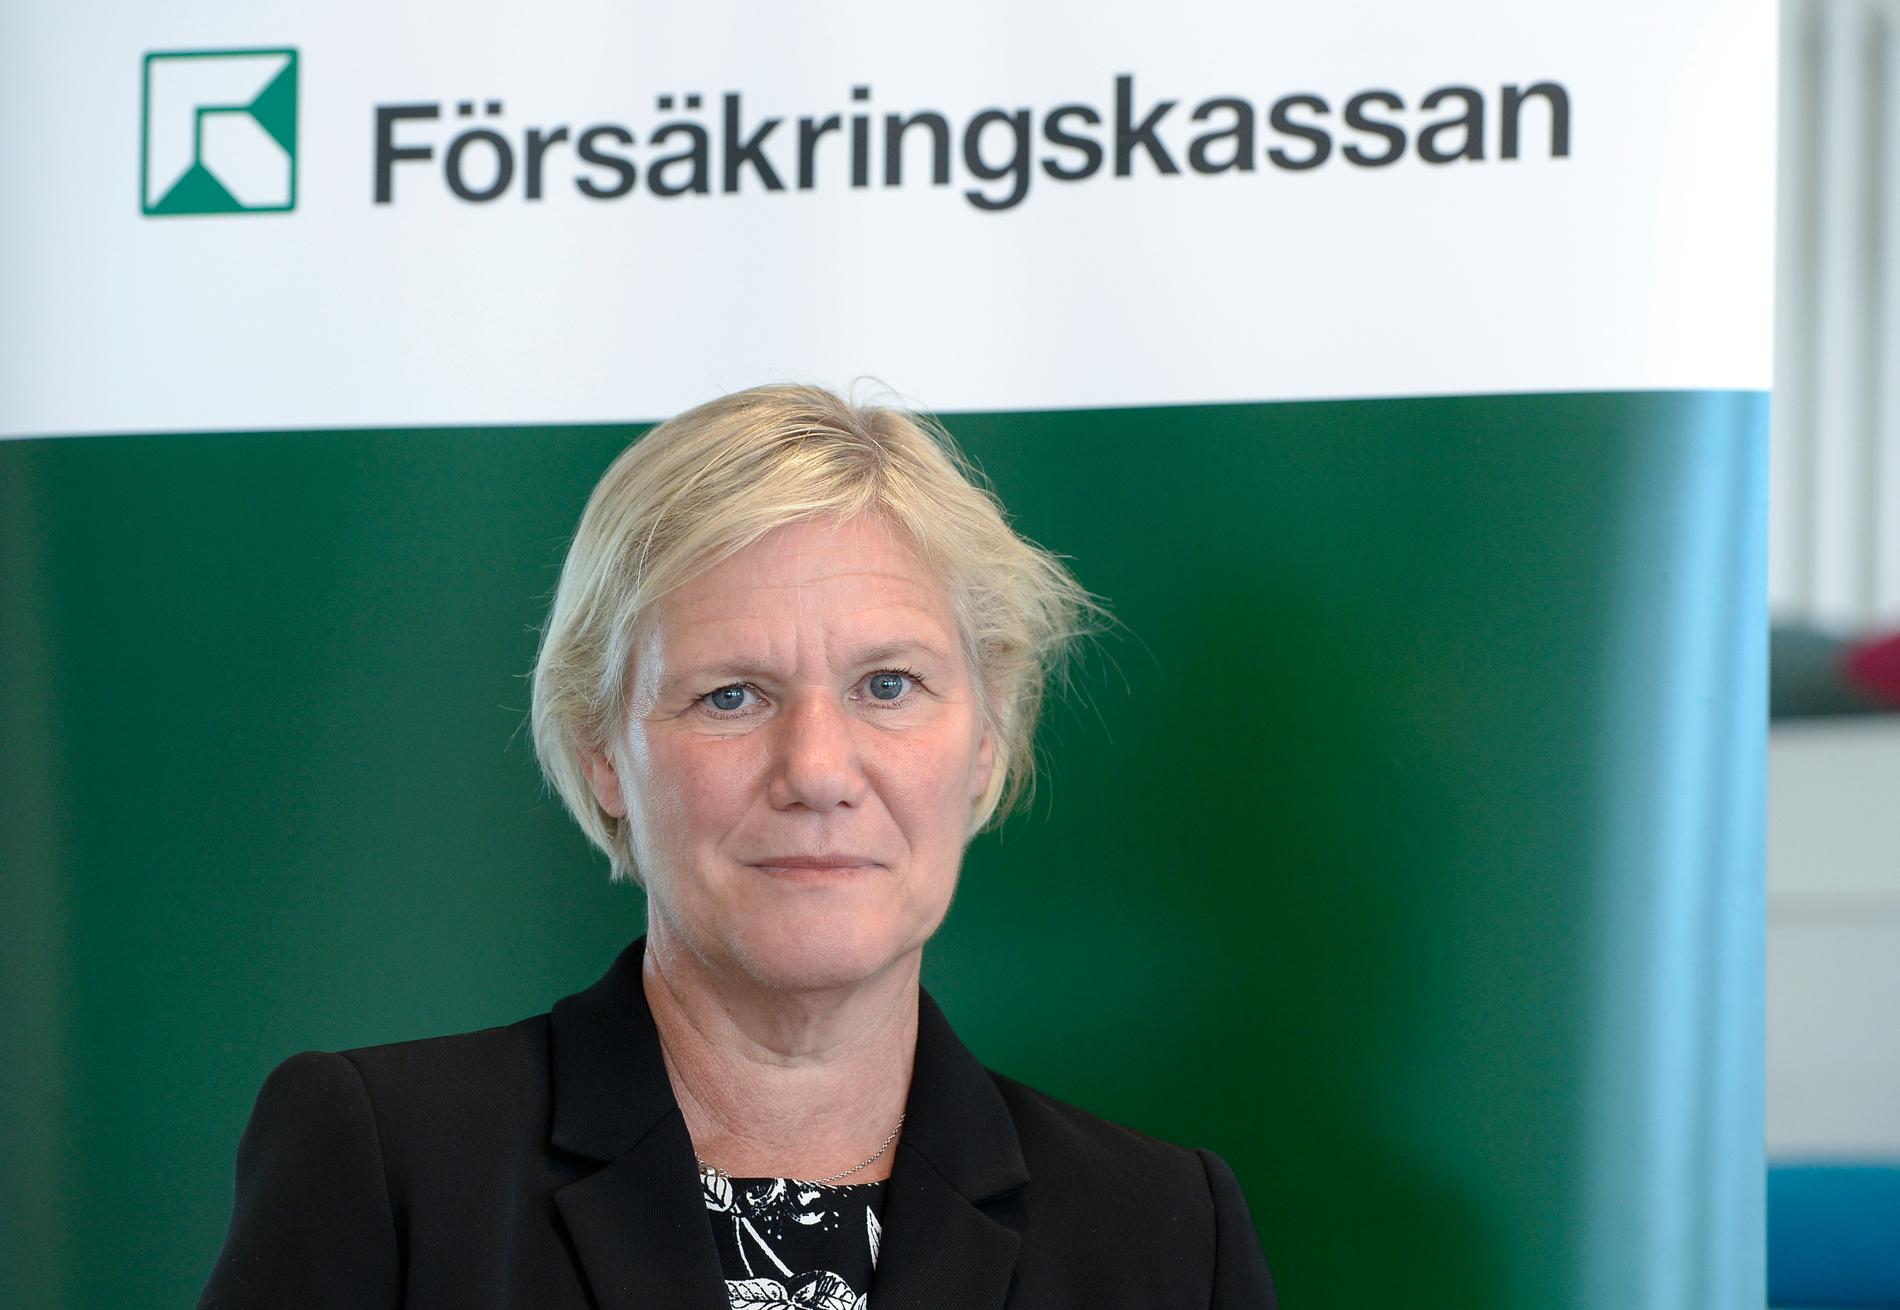 Moderaterna riktade en misstroendeförklaring mot Strandhäll till följd av petningen av Försäkringskassans generaldirektör Ann-Marie Begler.